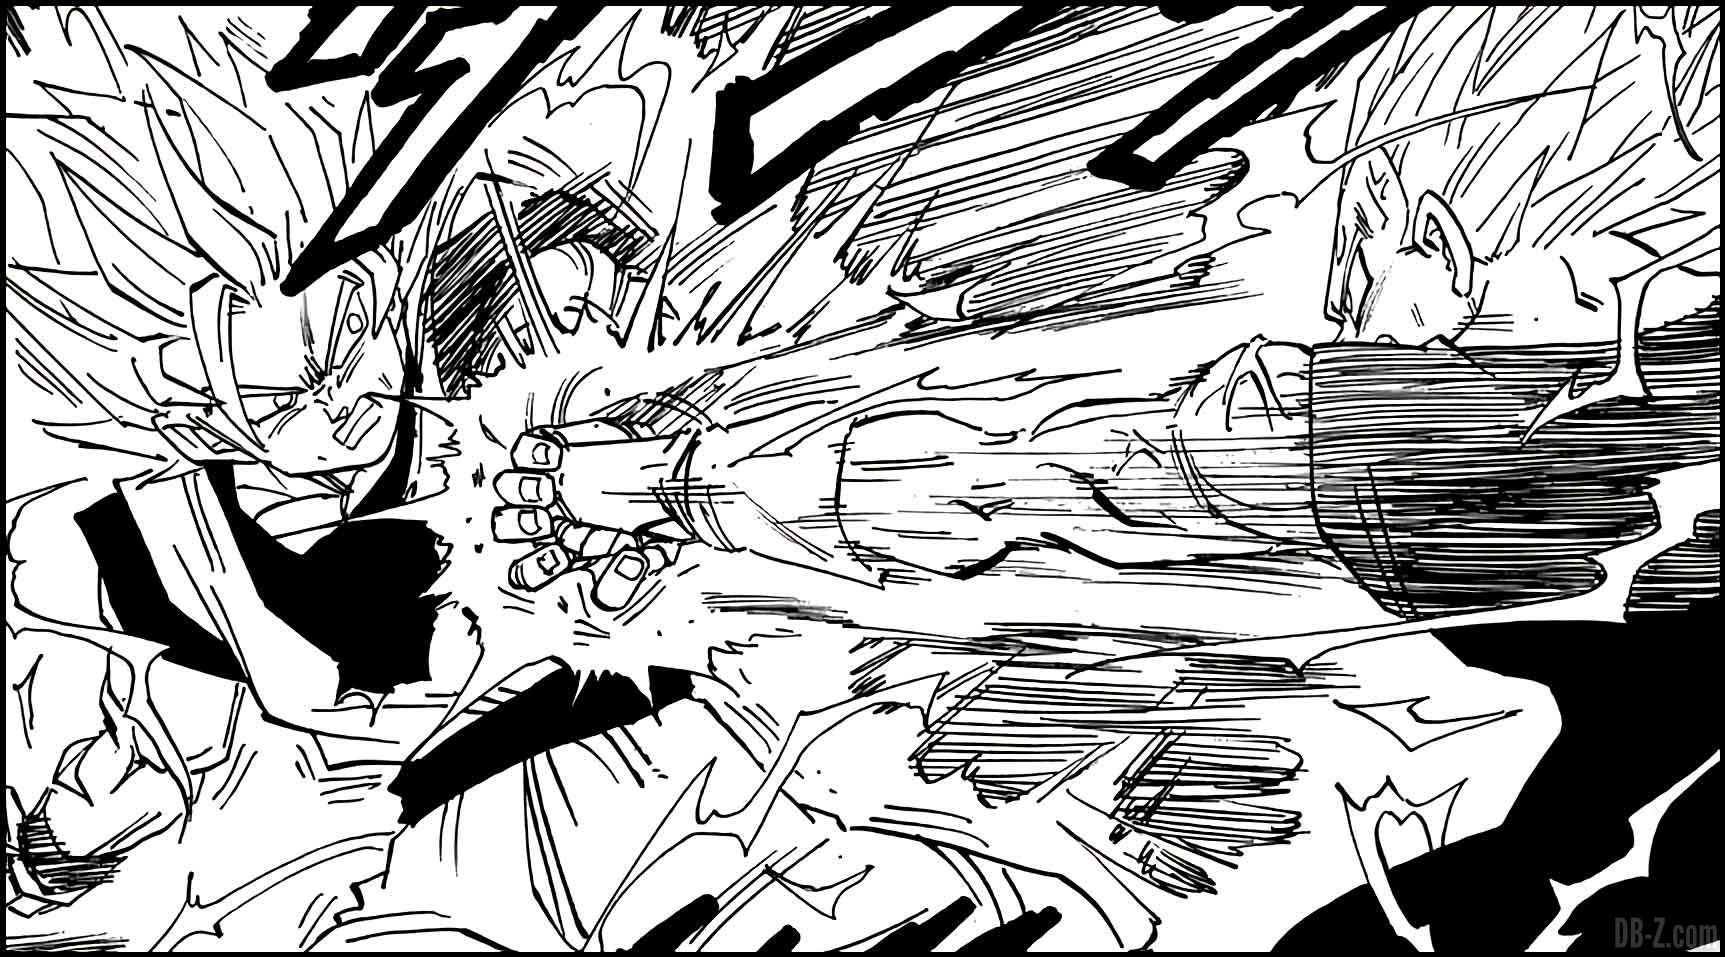 Statue Broly vs Goku & Vegeta en résine (Xceed × ORS)